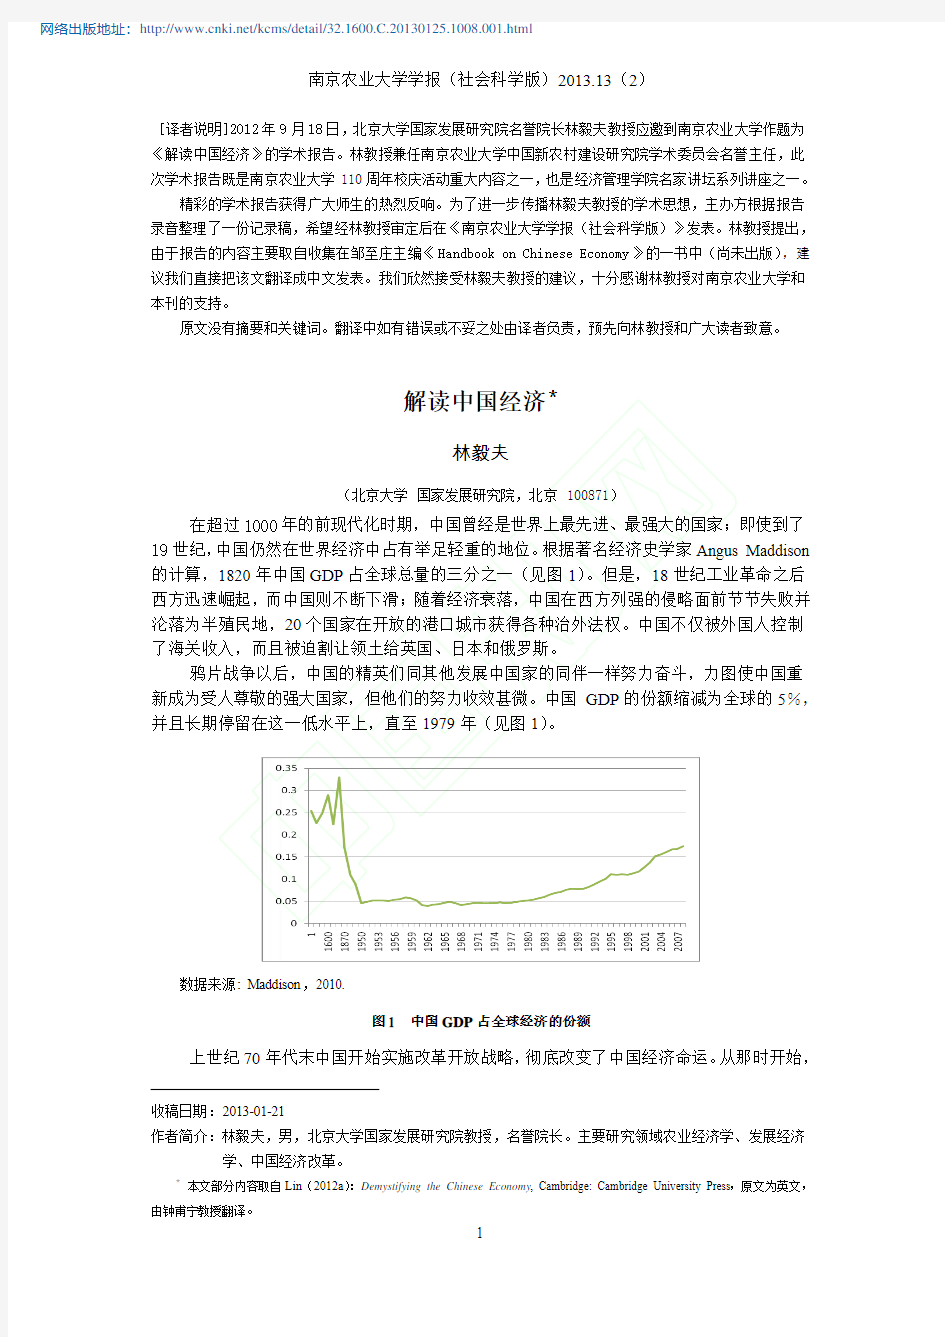 林毅夫 解读中国经济